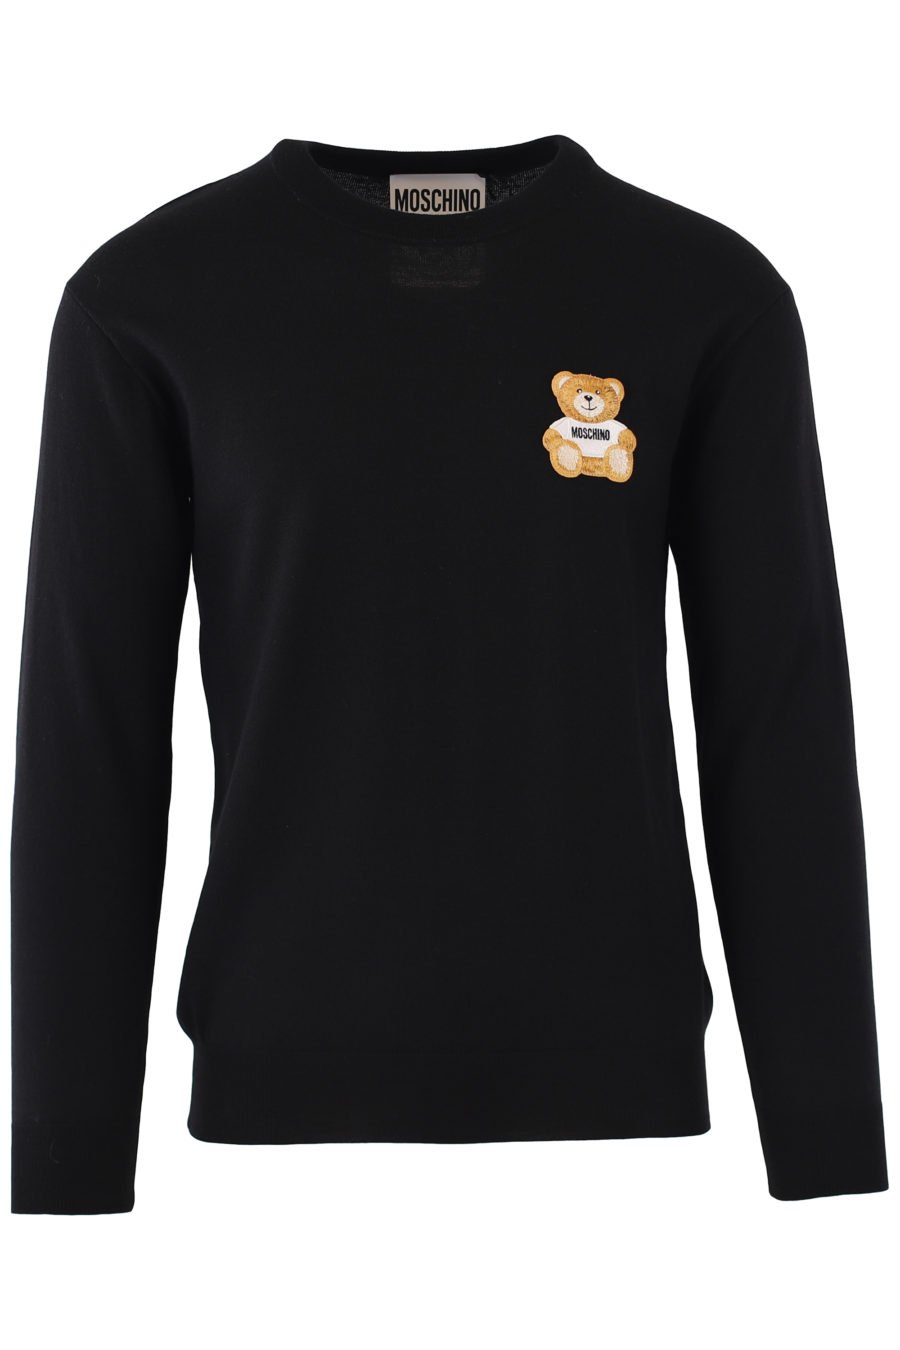 Jersey negro con logo oso - IMG 9289